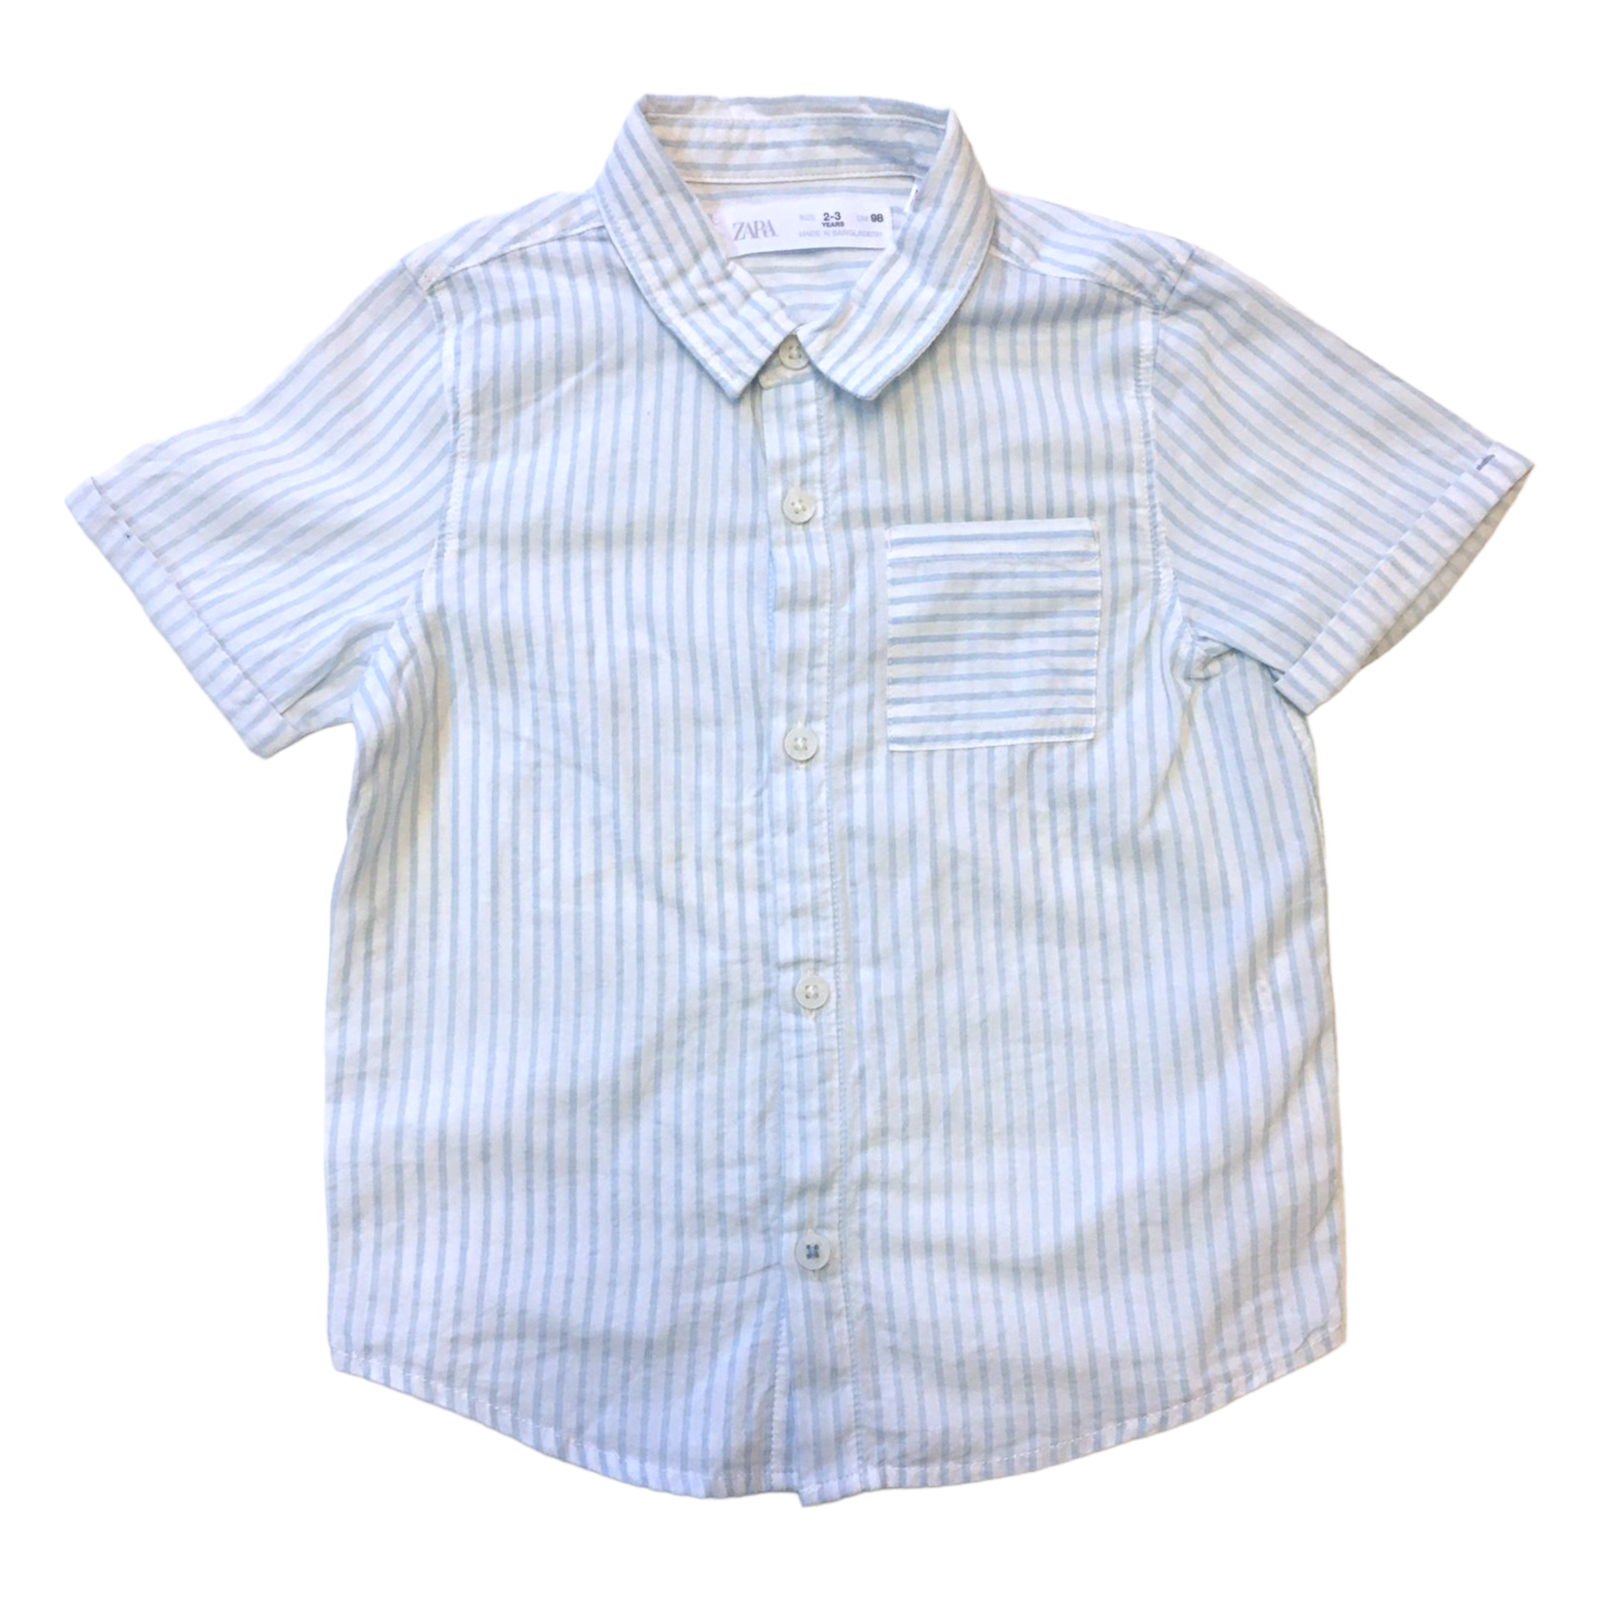 Camisa Zara manga corta blanca con rayas celeste